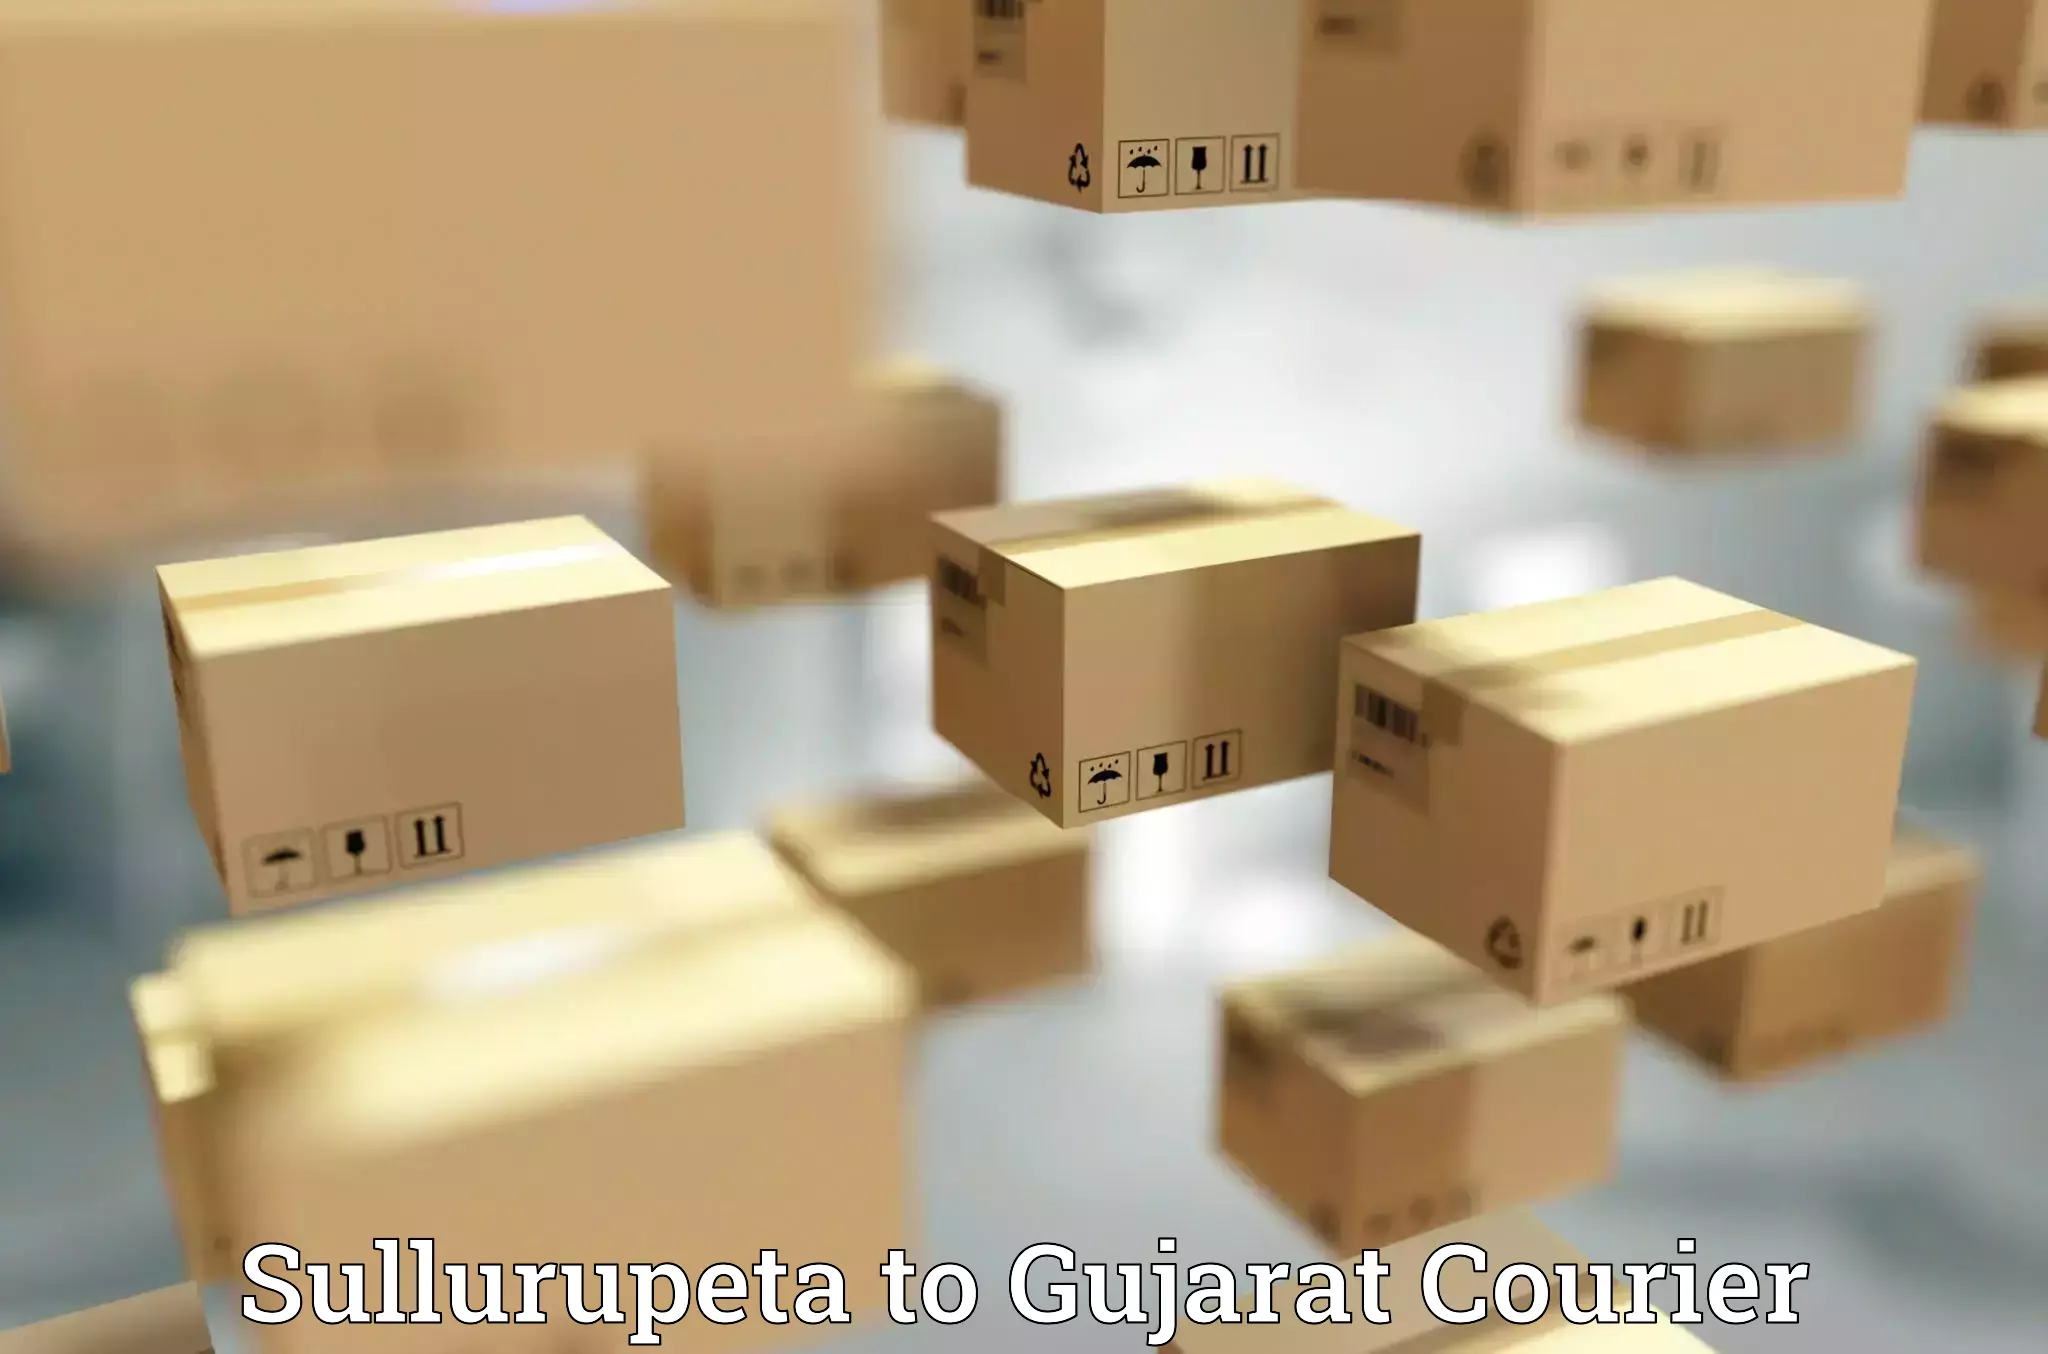 Luggage delivery network Sullurupeta to Gujarat